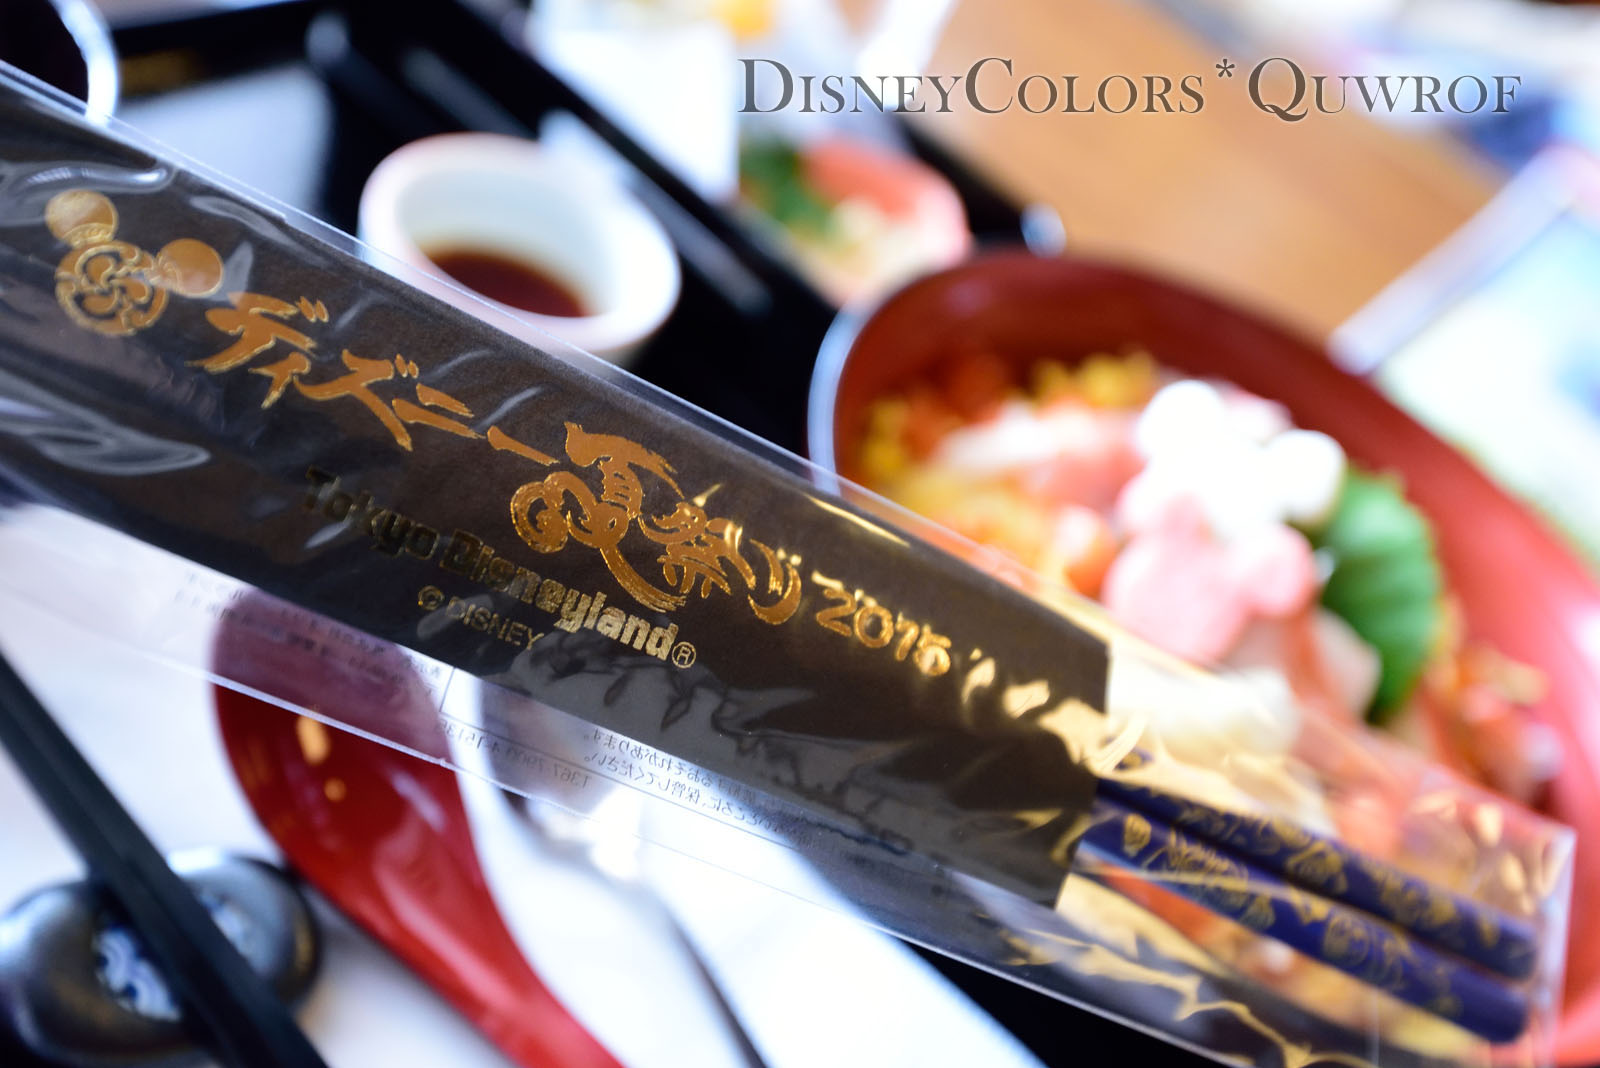 スーベニア箸付き 3種類の食べ方を楽しめる豪華な祭りちらし寿司 れすとらん北斎 02 Disney Colors Blog